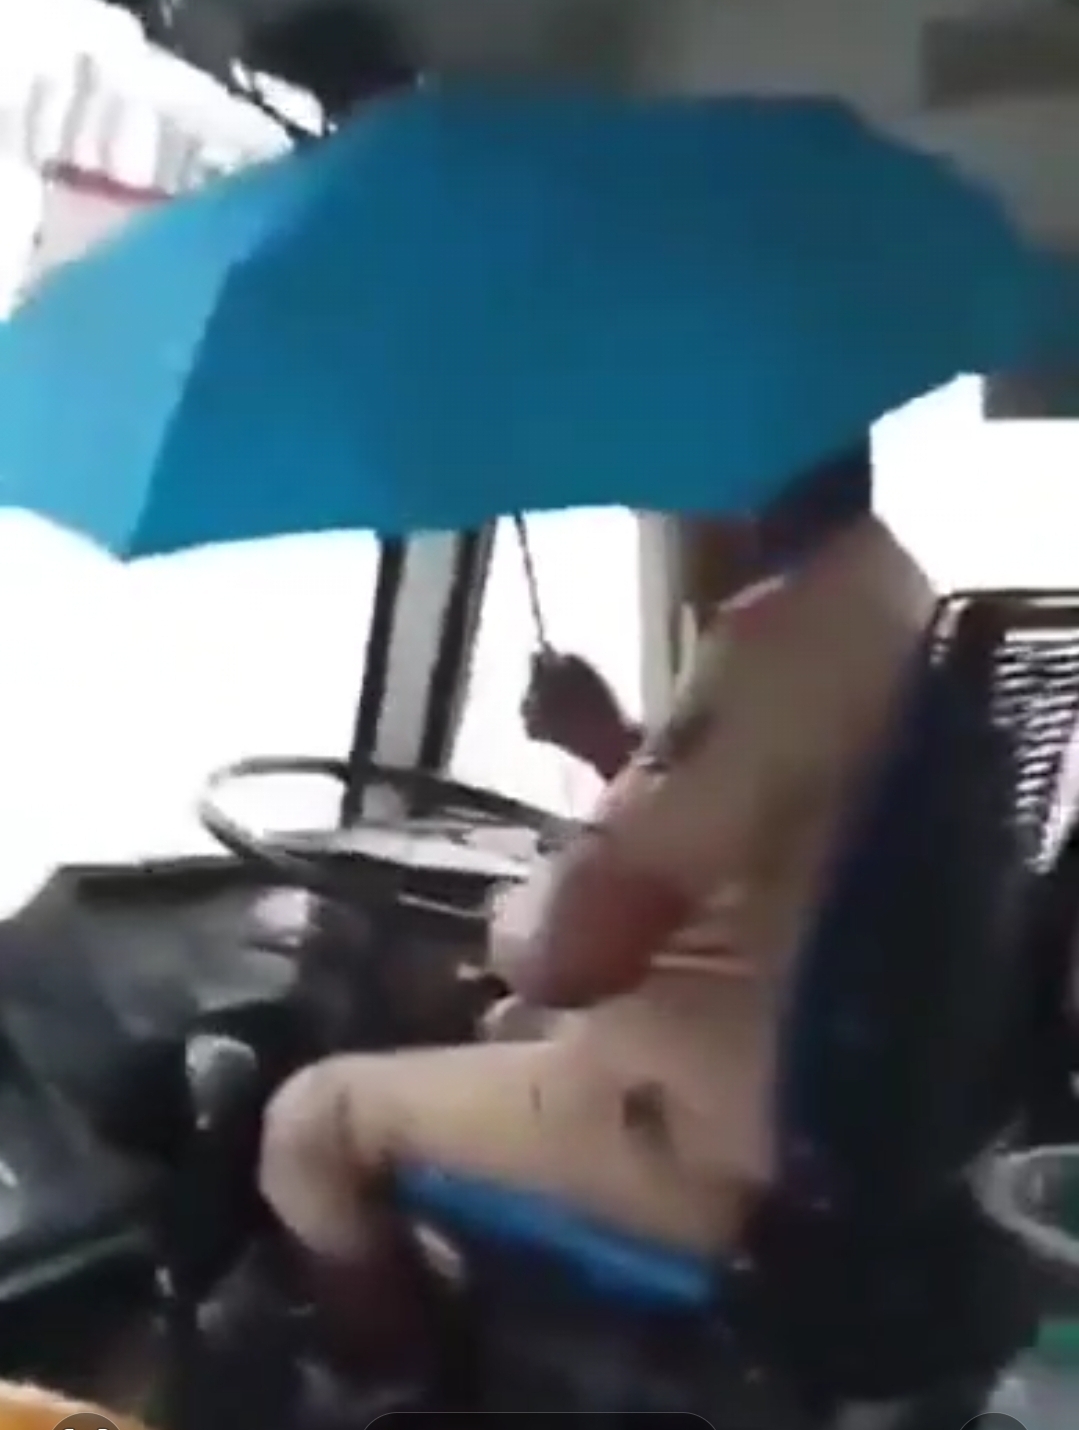 *बस चालकाला गळक्या बसमुळे एका हातात छत्री धरून बस चालवण्याची नामुष्की ओढवली*